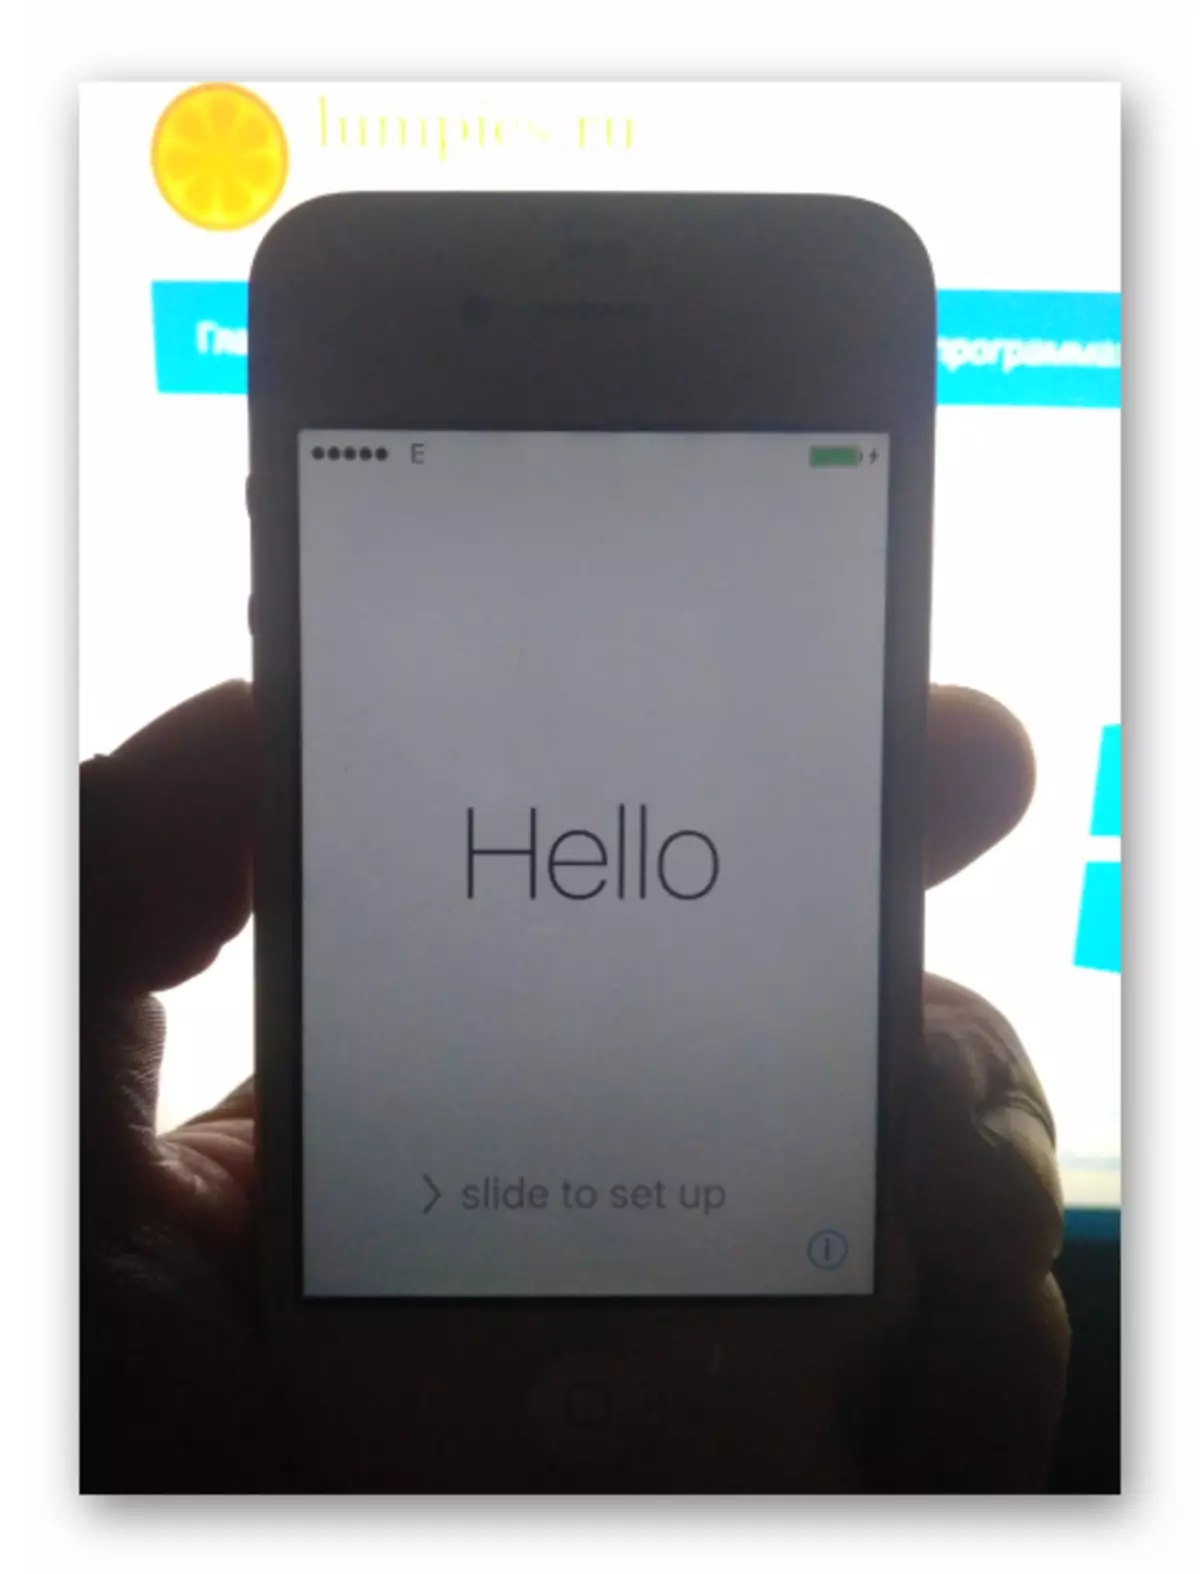 I-Apple iPhone 4s iqala i-iOS emva kwe-firgus firliwa nge-iTunes